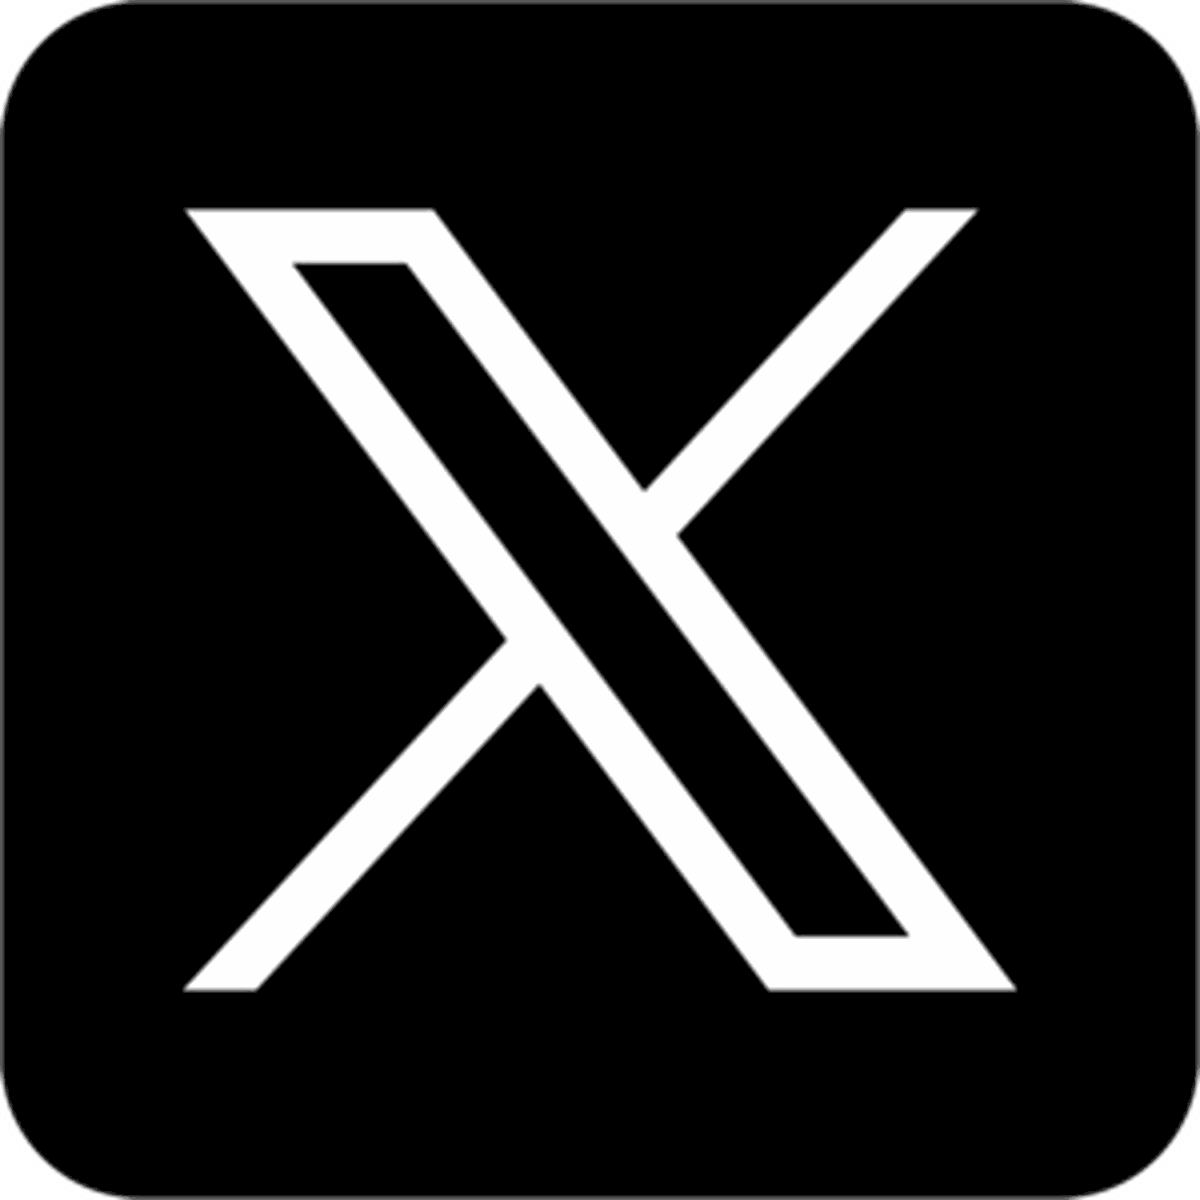 Twitter X Logo Png - Free Transparent PNG Logos